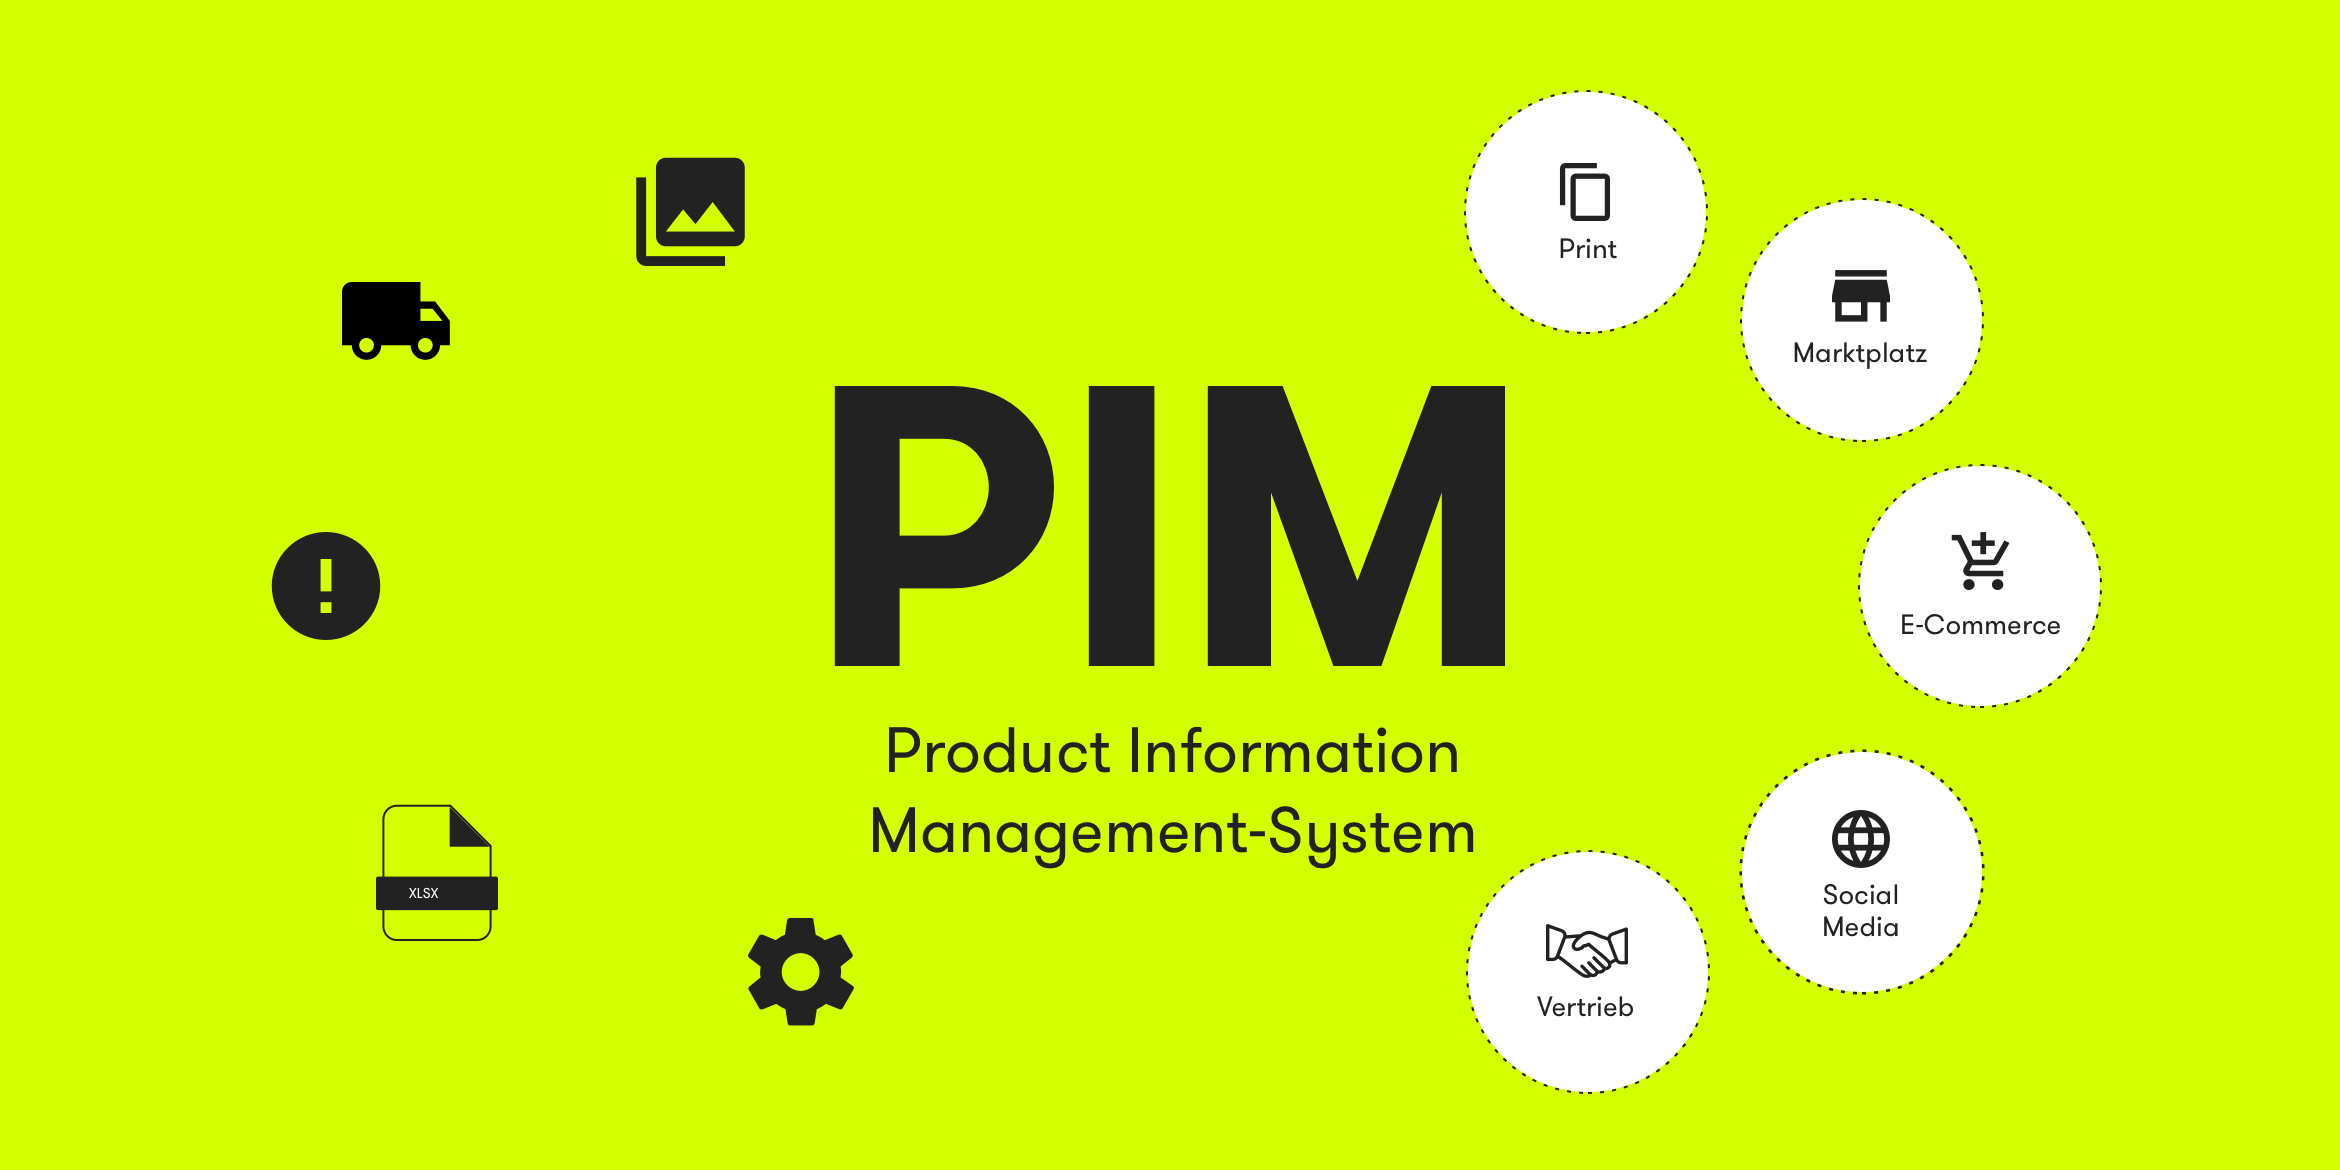 Vor einem grünen Hintergrund steht geschrieben: PIM Product Information Management System